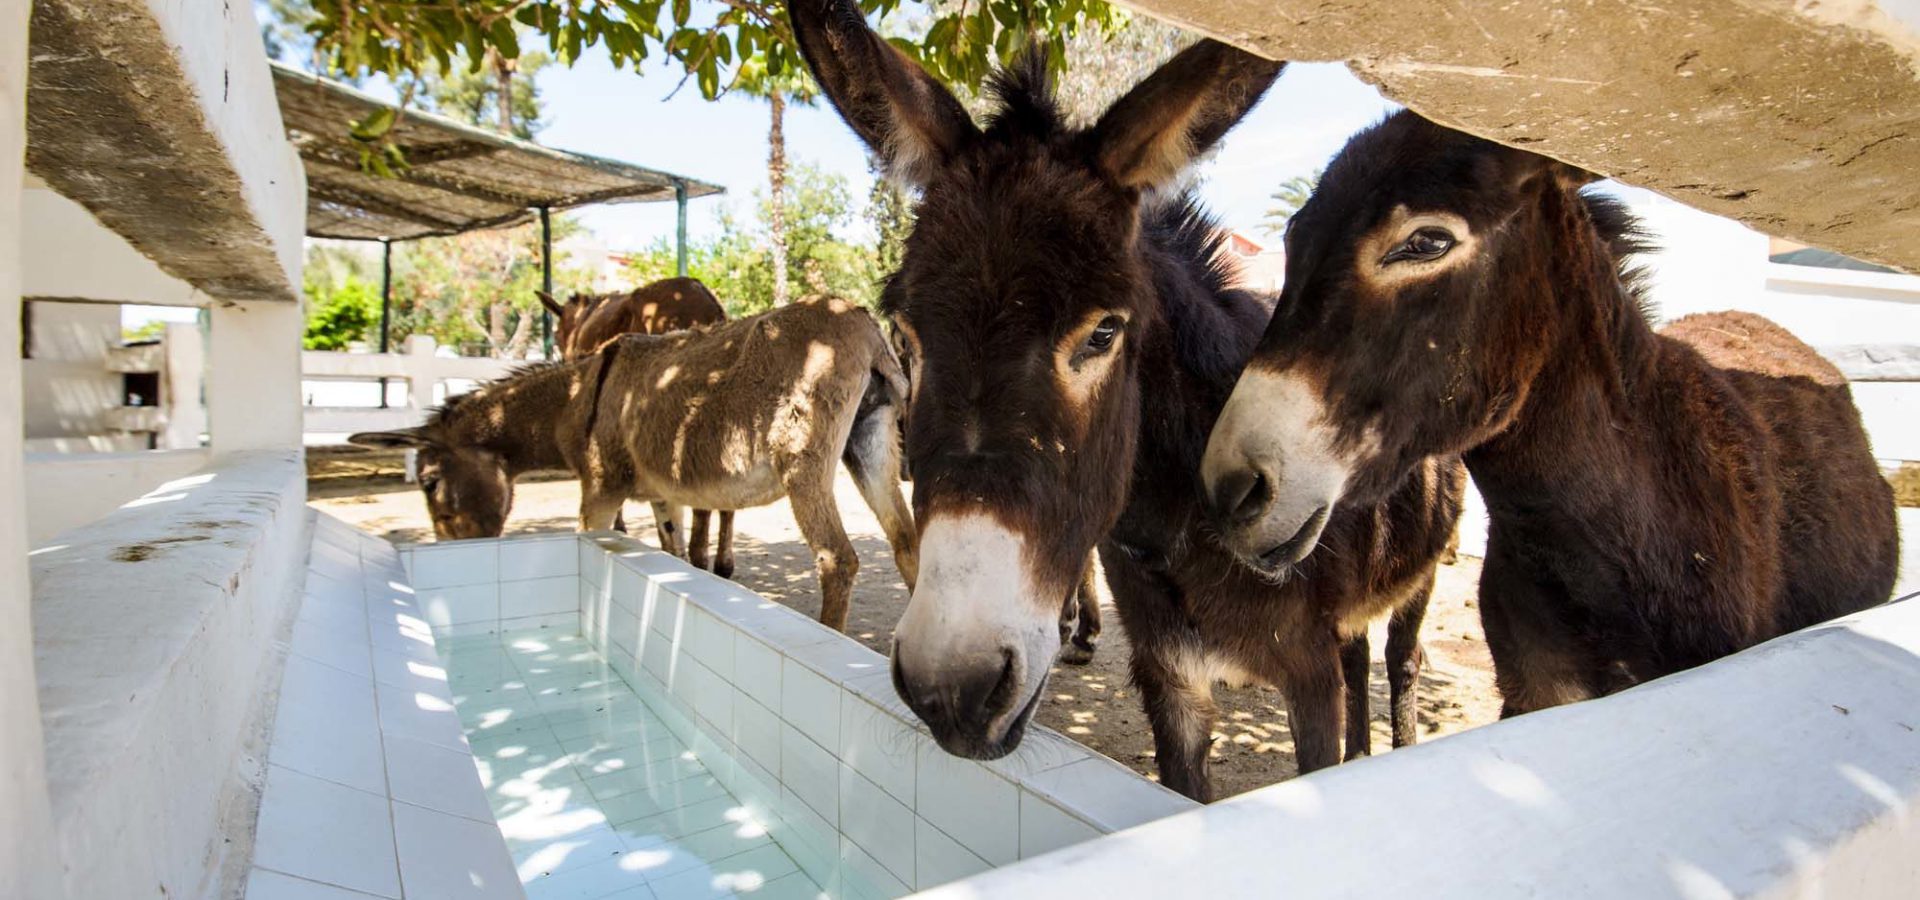 donkeys by water trough